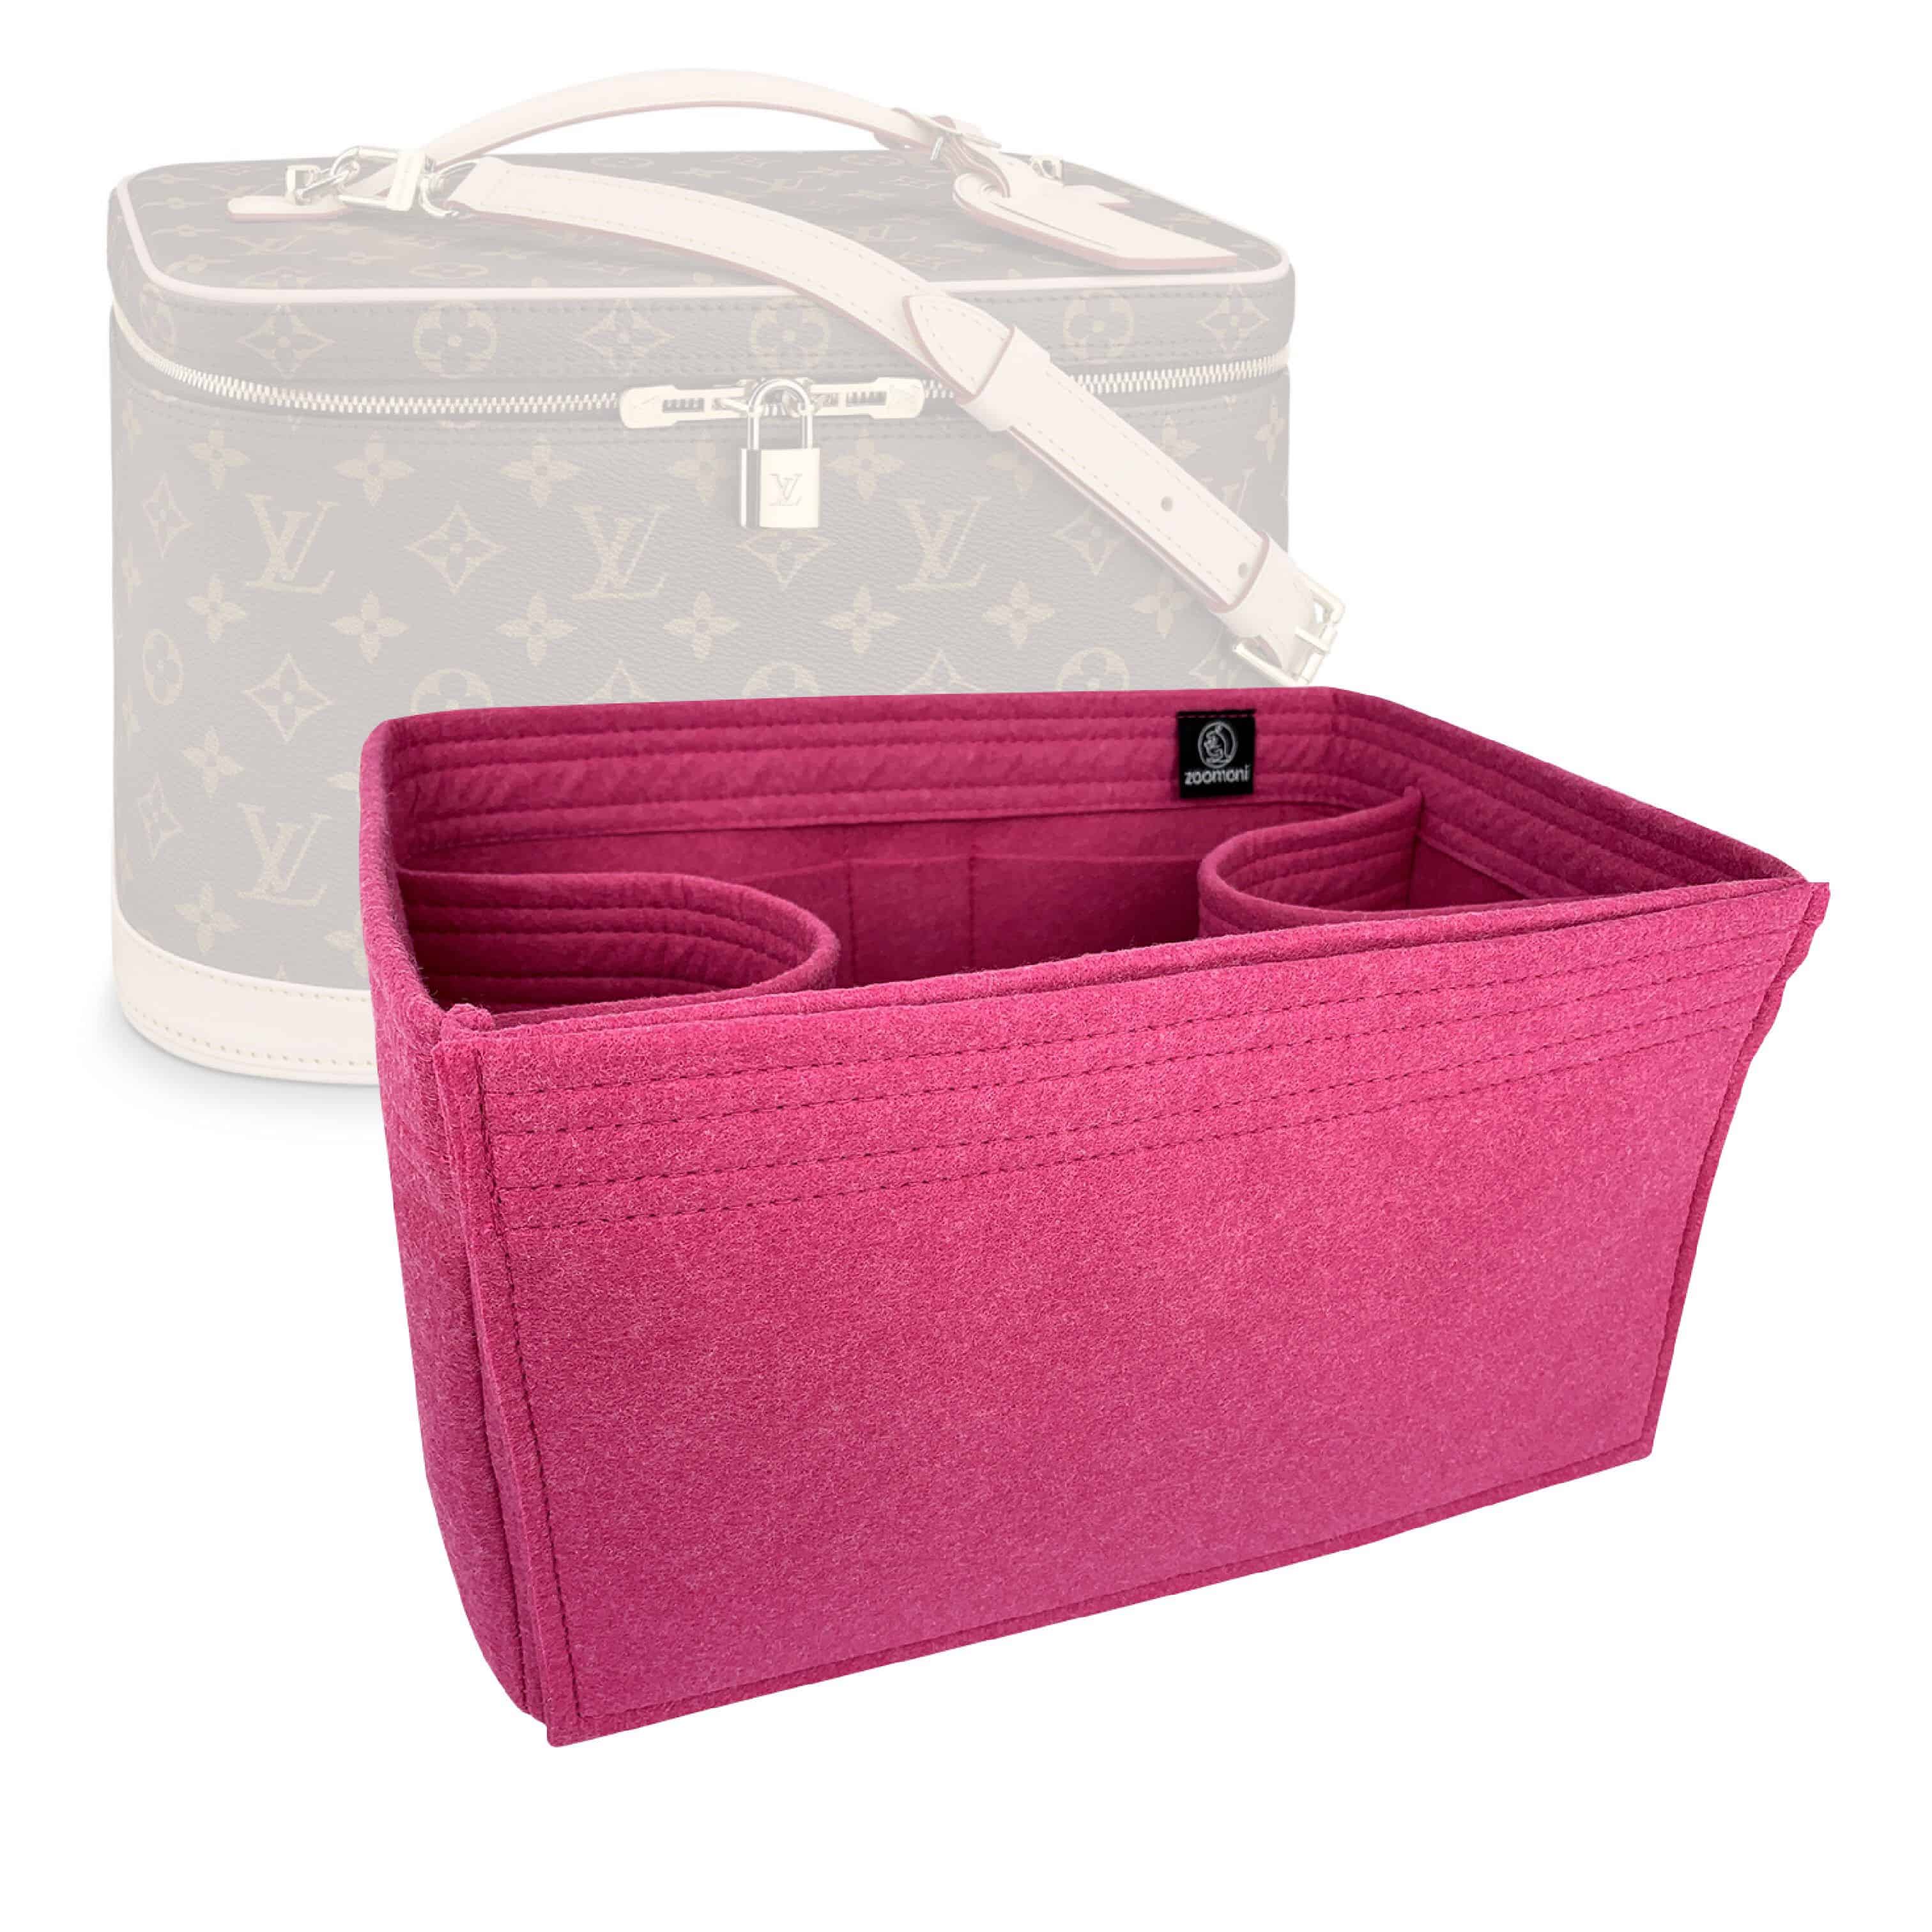 Bag Organizer for Louis Vuitton Nice BB (Detachable Middle Divider) -  Zoomoni